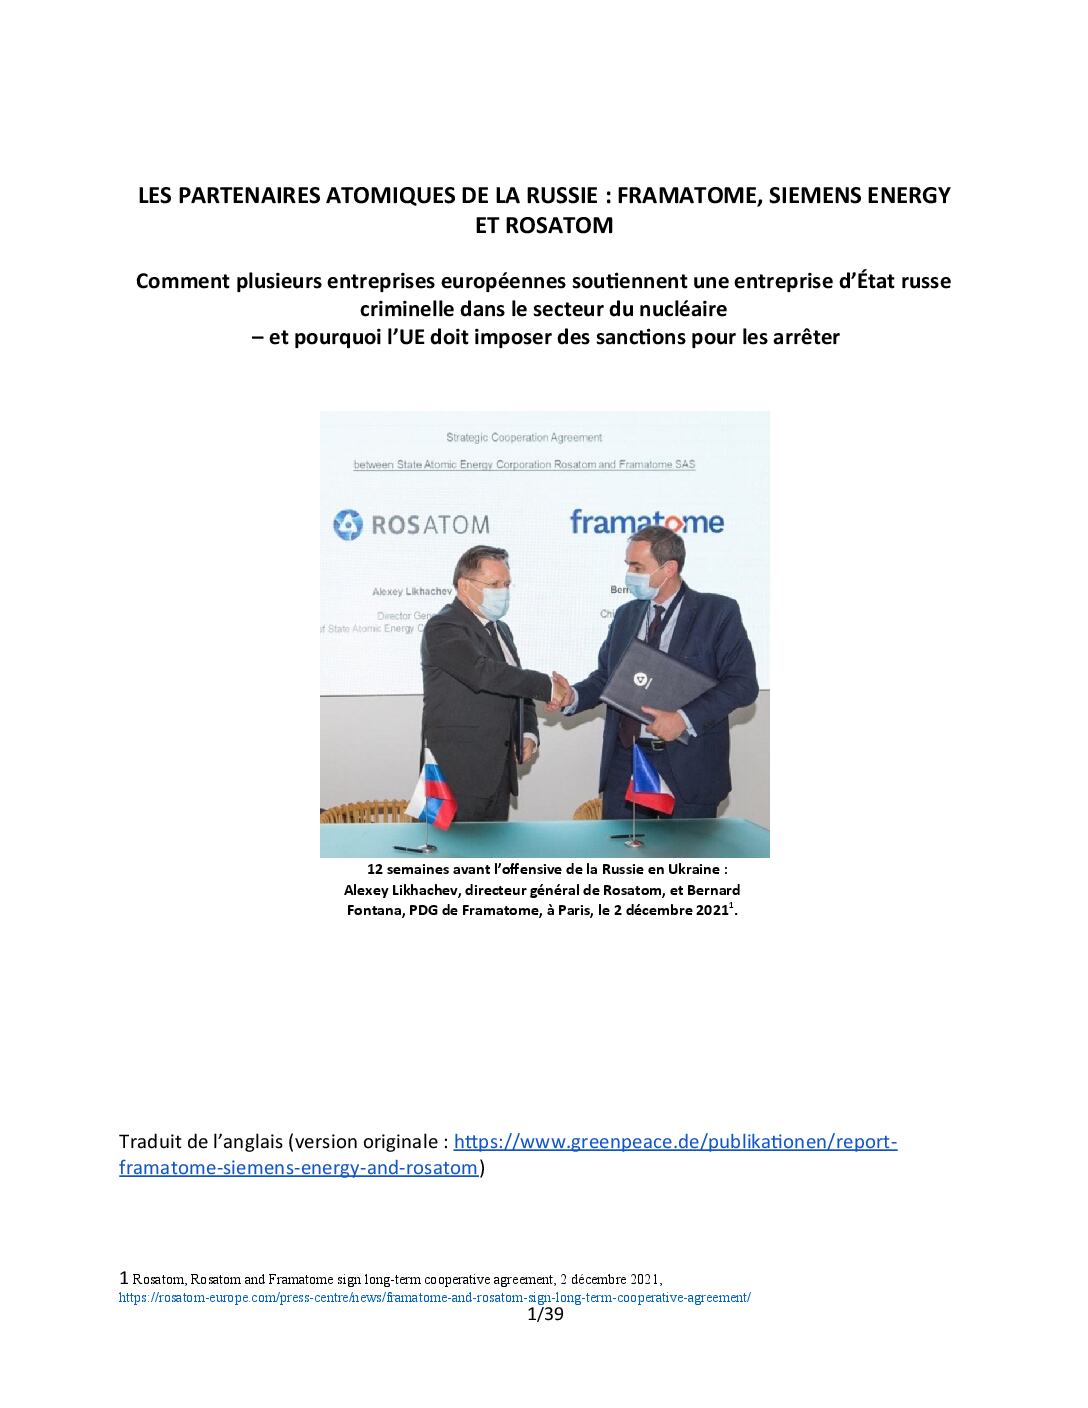 Les partenaires atomiques de la Russie : Framatome, Siemens Energy et Rosatom